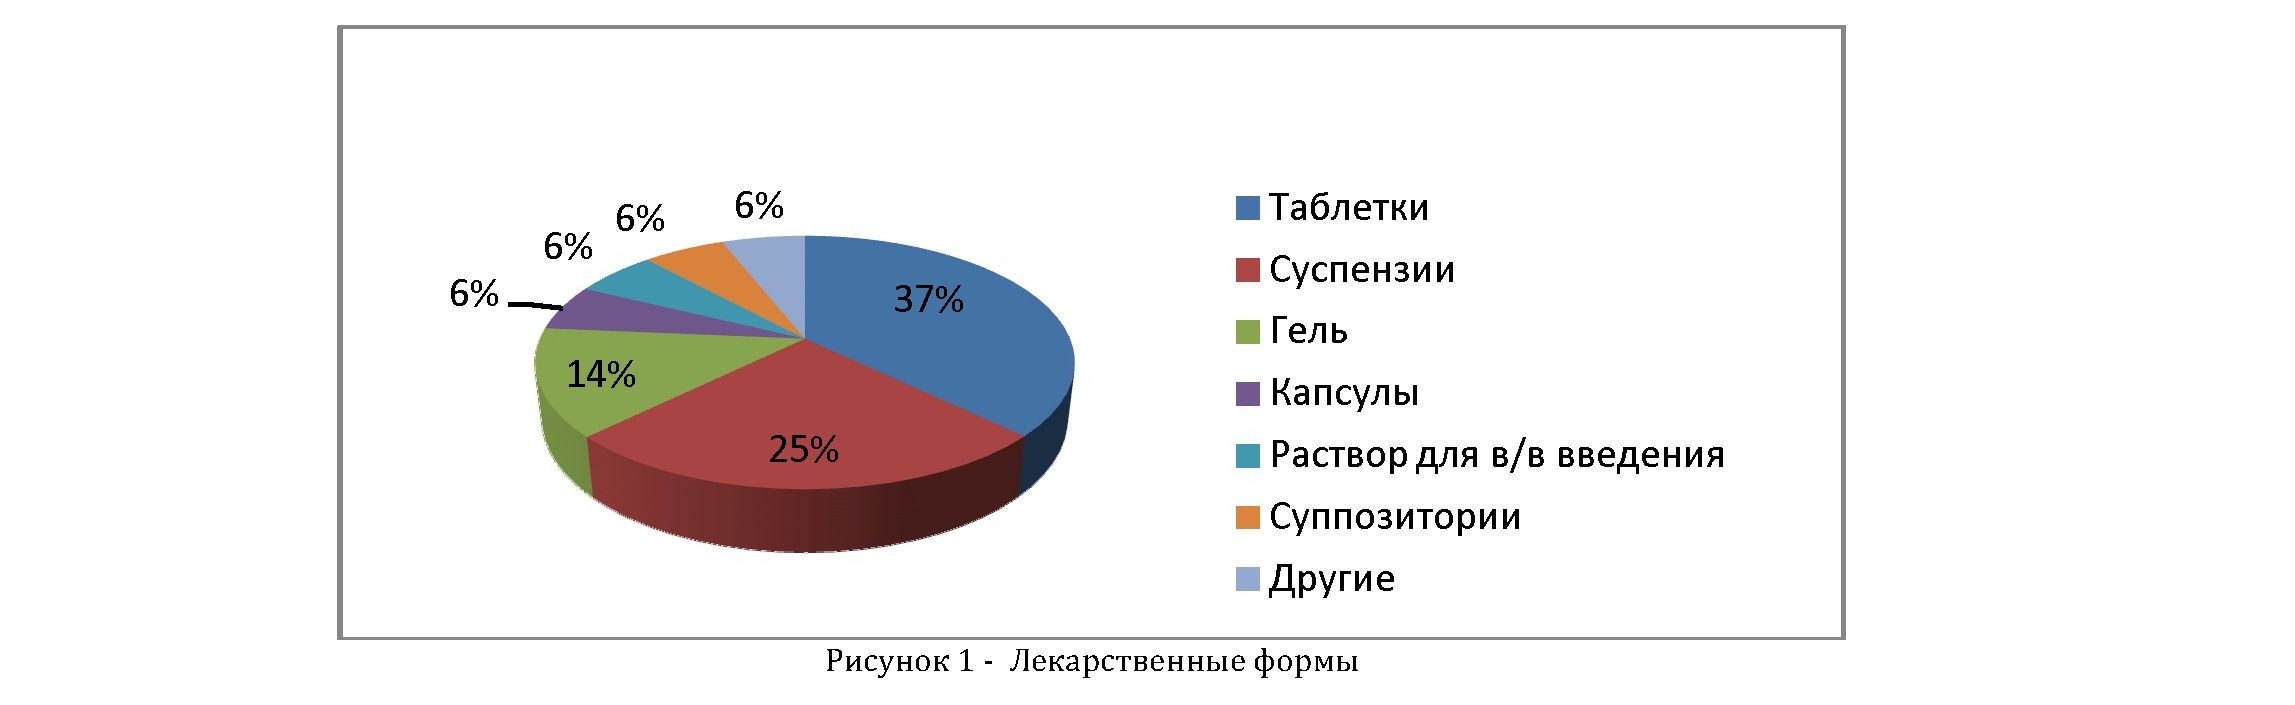 Сравнительный анализ фармацевтического рынка Казахстана лекарственных средств, содержащих ибупрофен